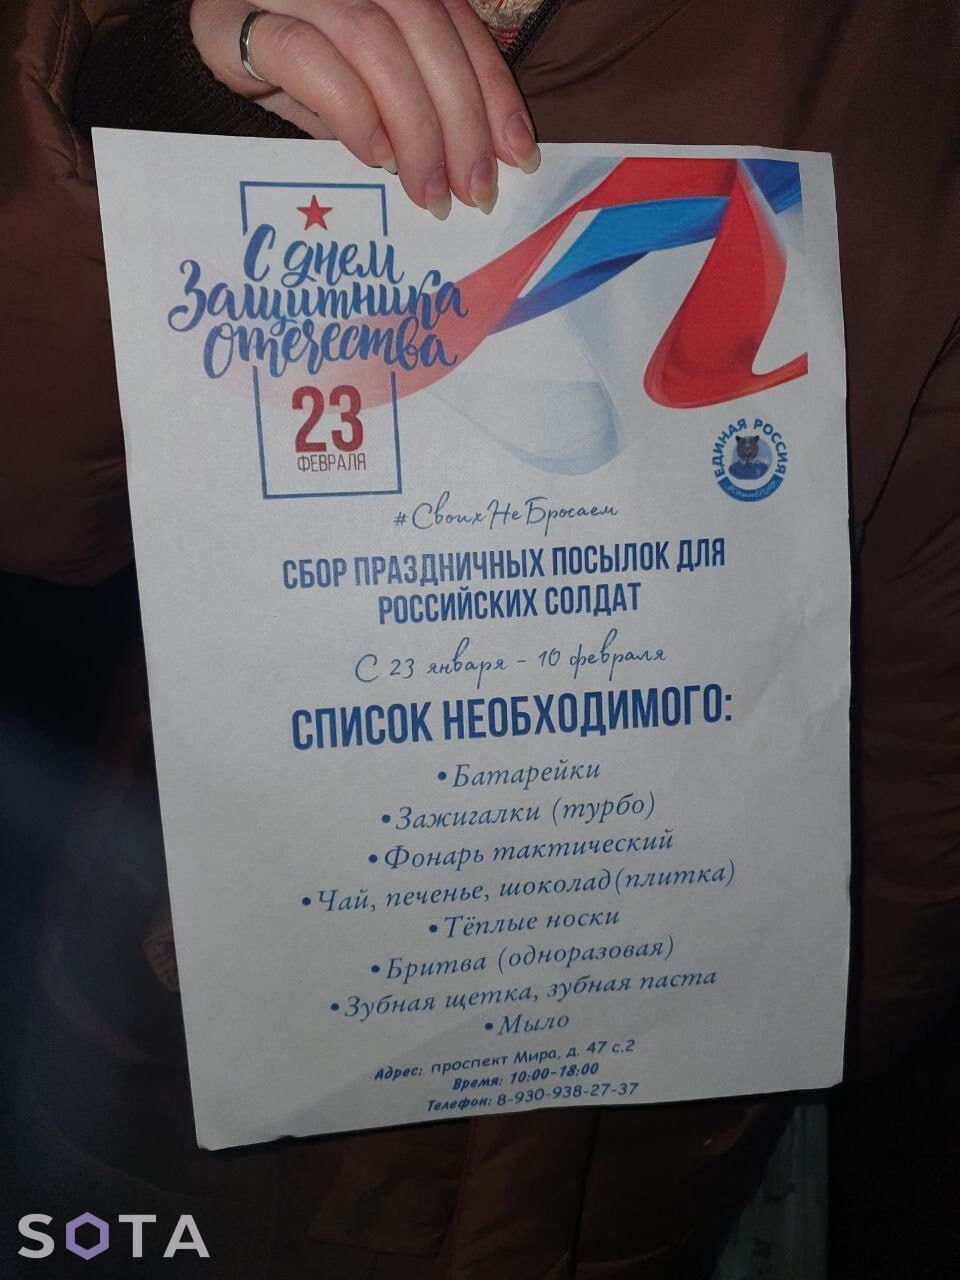 Мыло, зубные щетки и батарейки: в России начали сбор "праздничных посылок" для оккупантов к годовщине вторжения. Фото